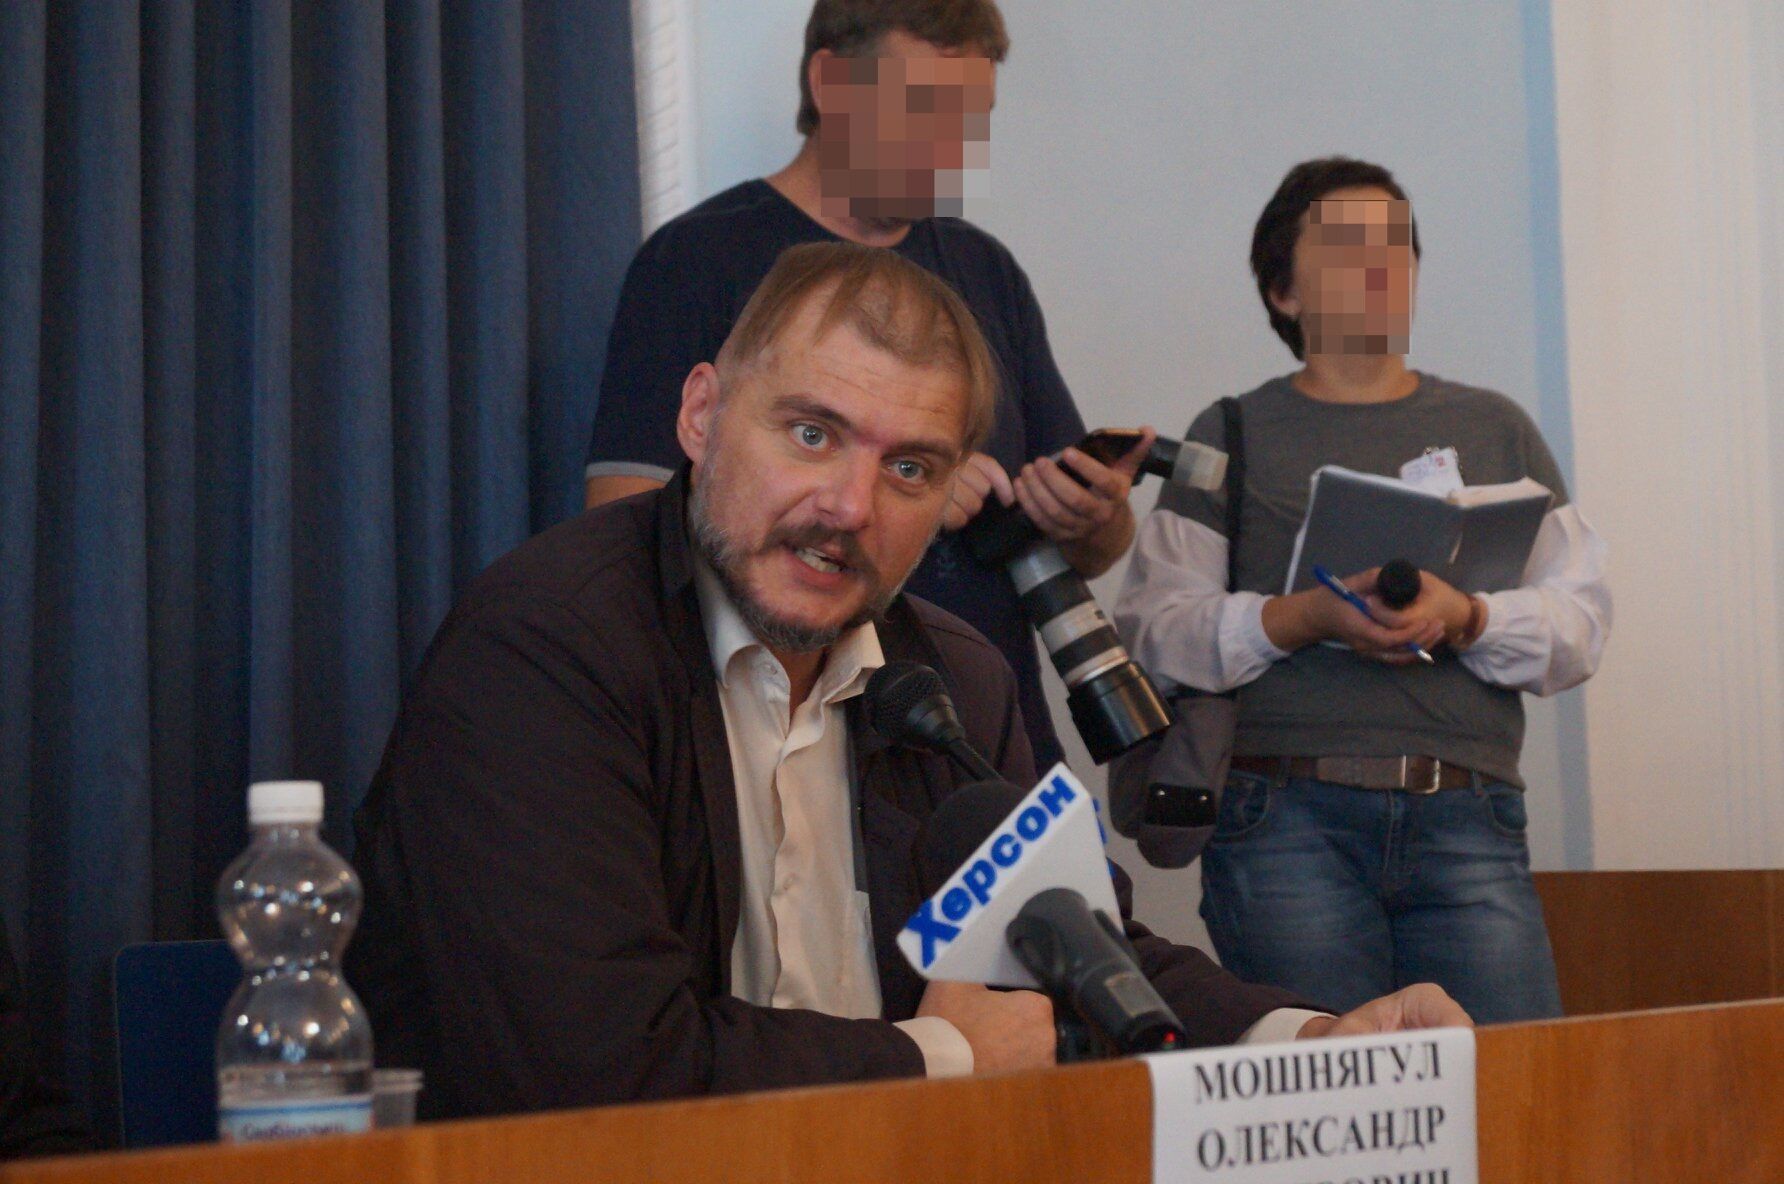 Володимир Молчанов – херсонський політолог, економіст